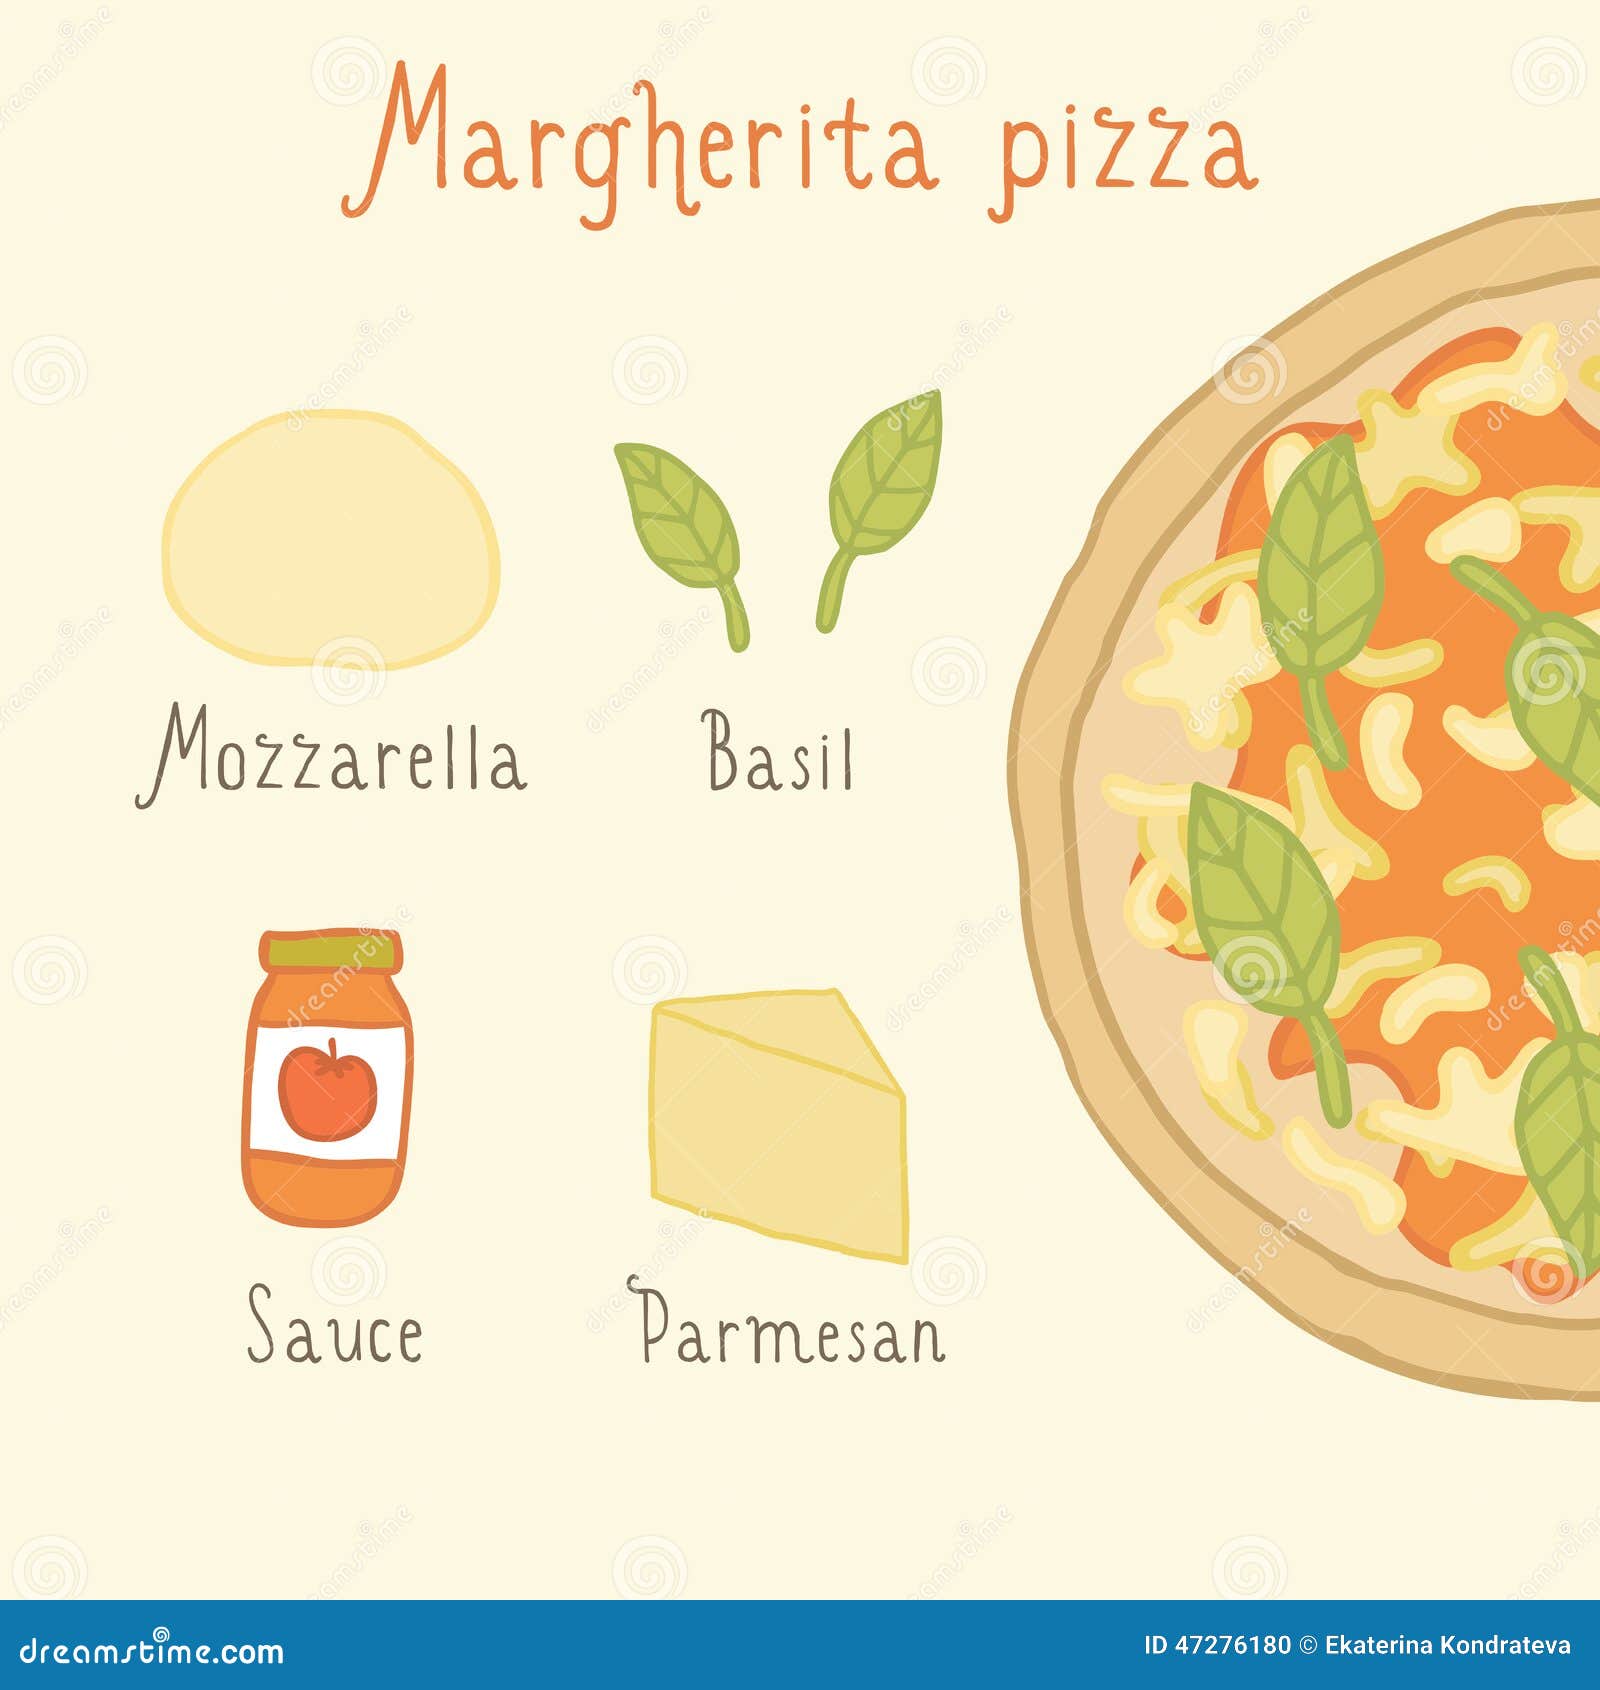 Рецепт пиццы на английском языке с переводом